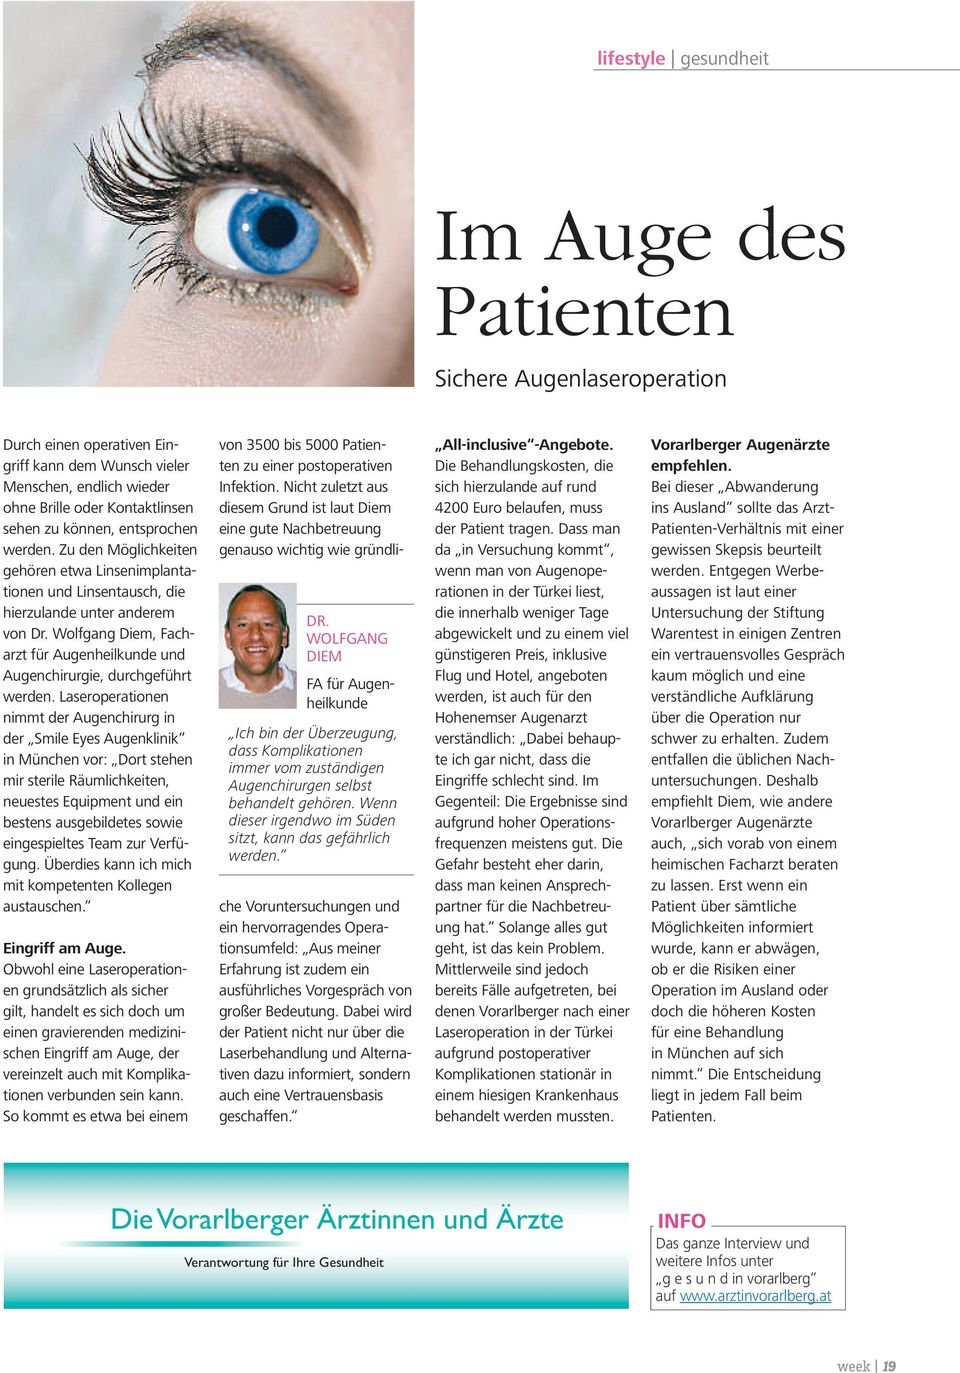 Wolfgang Diem, Facharzt für Augenheilkunde und Augenchirurgie, durchgeführt werden.